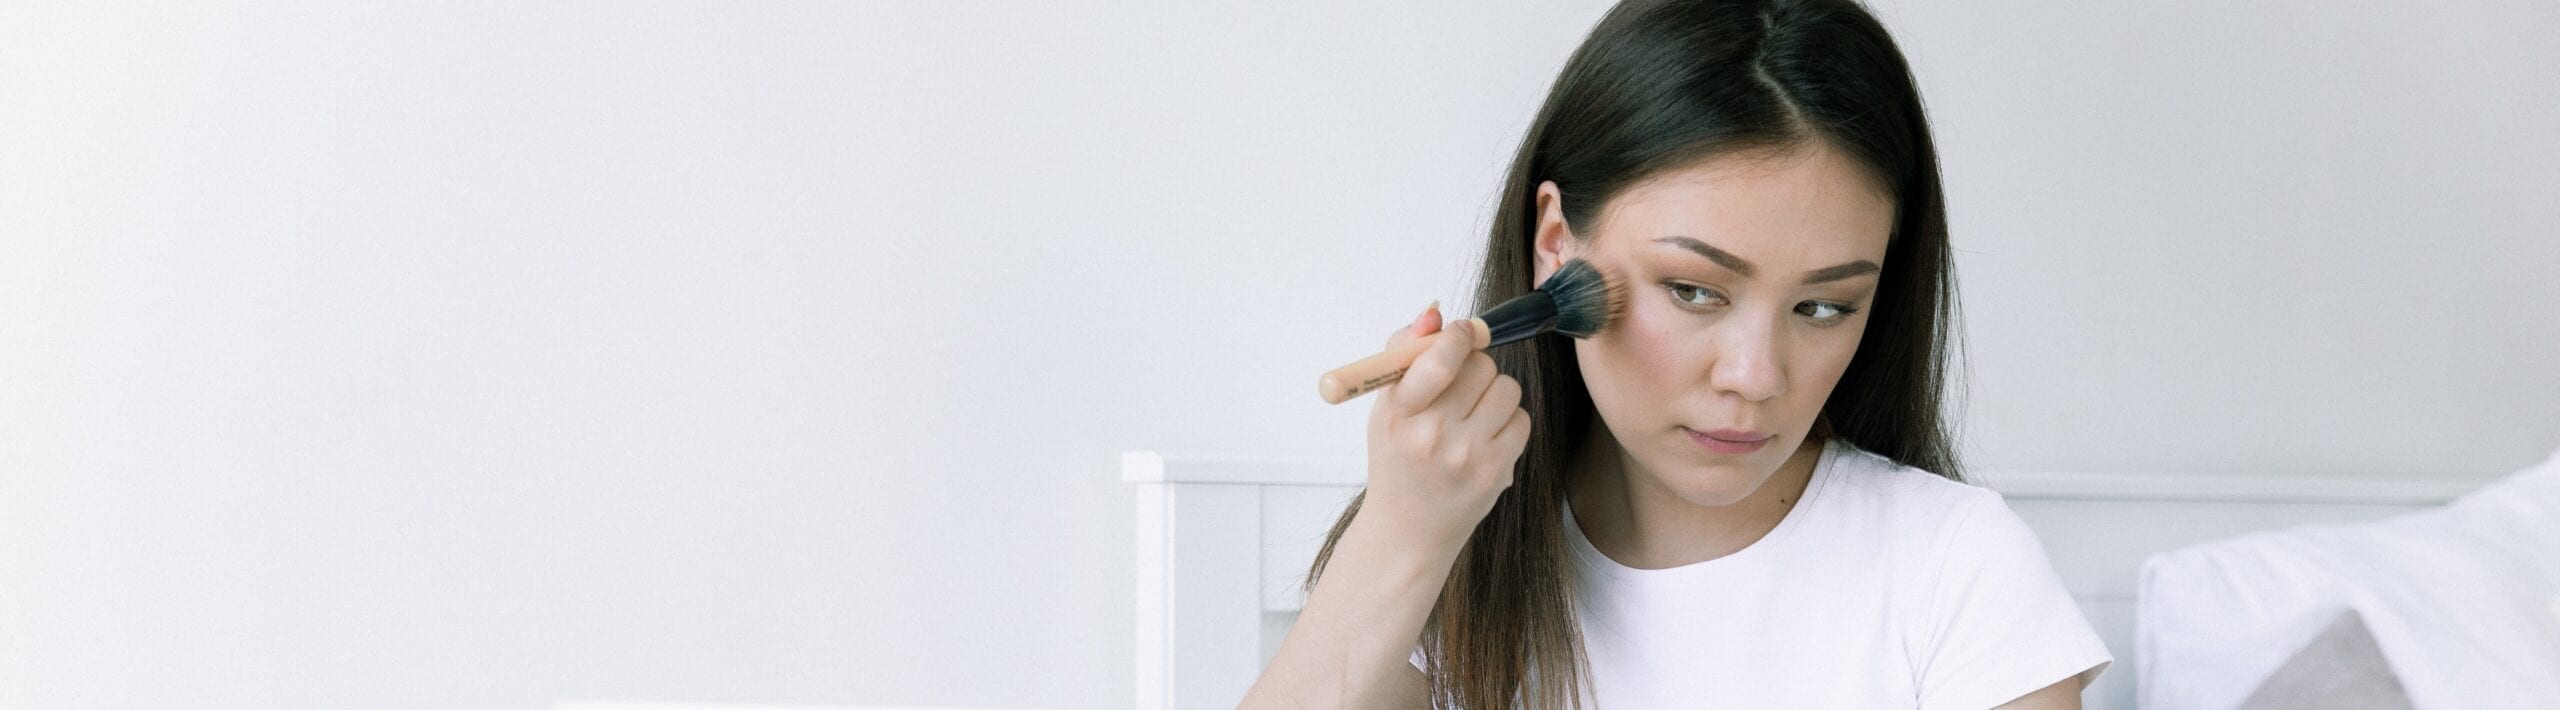 Woman applying makeup with a makeup brush